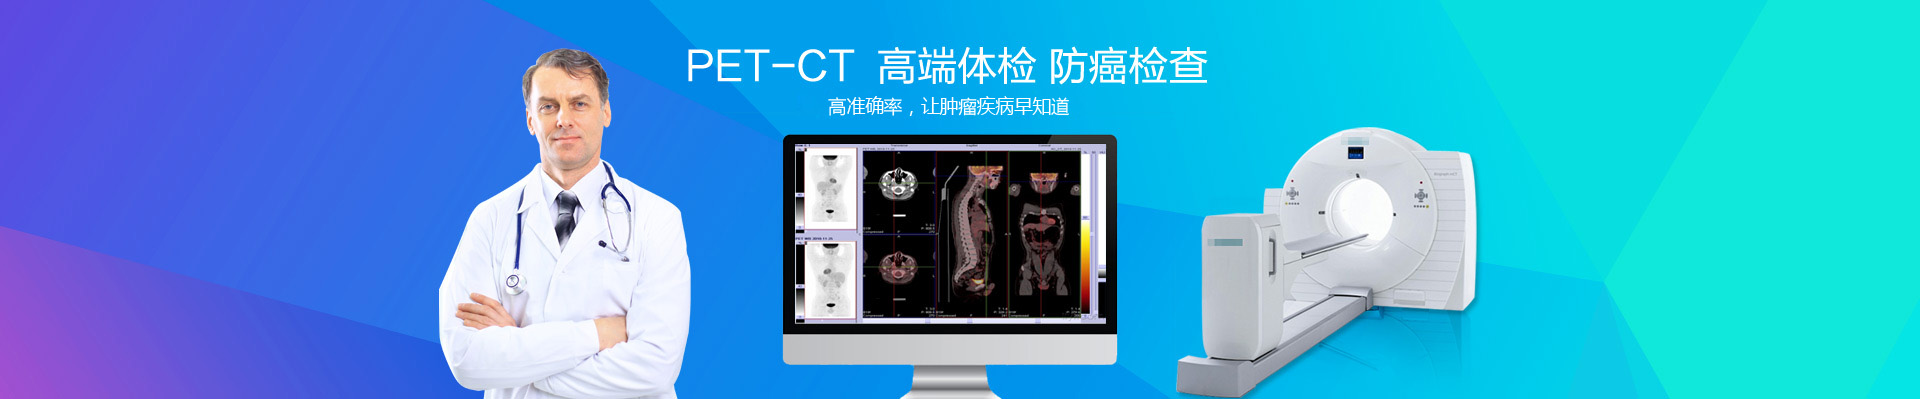 广州全景医学影像诊断PET-CT中心